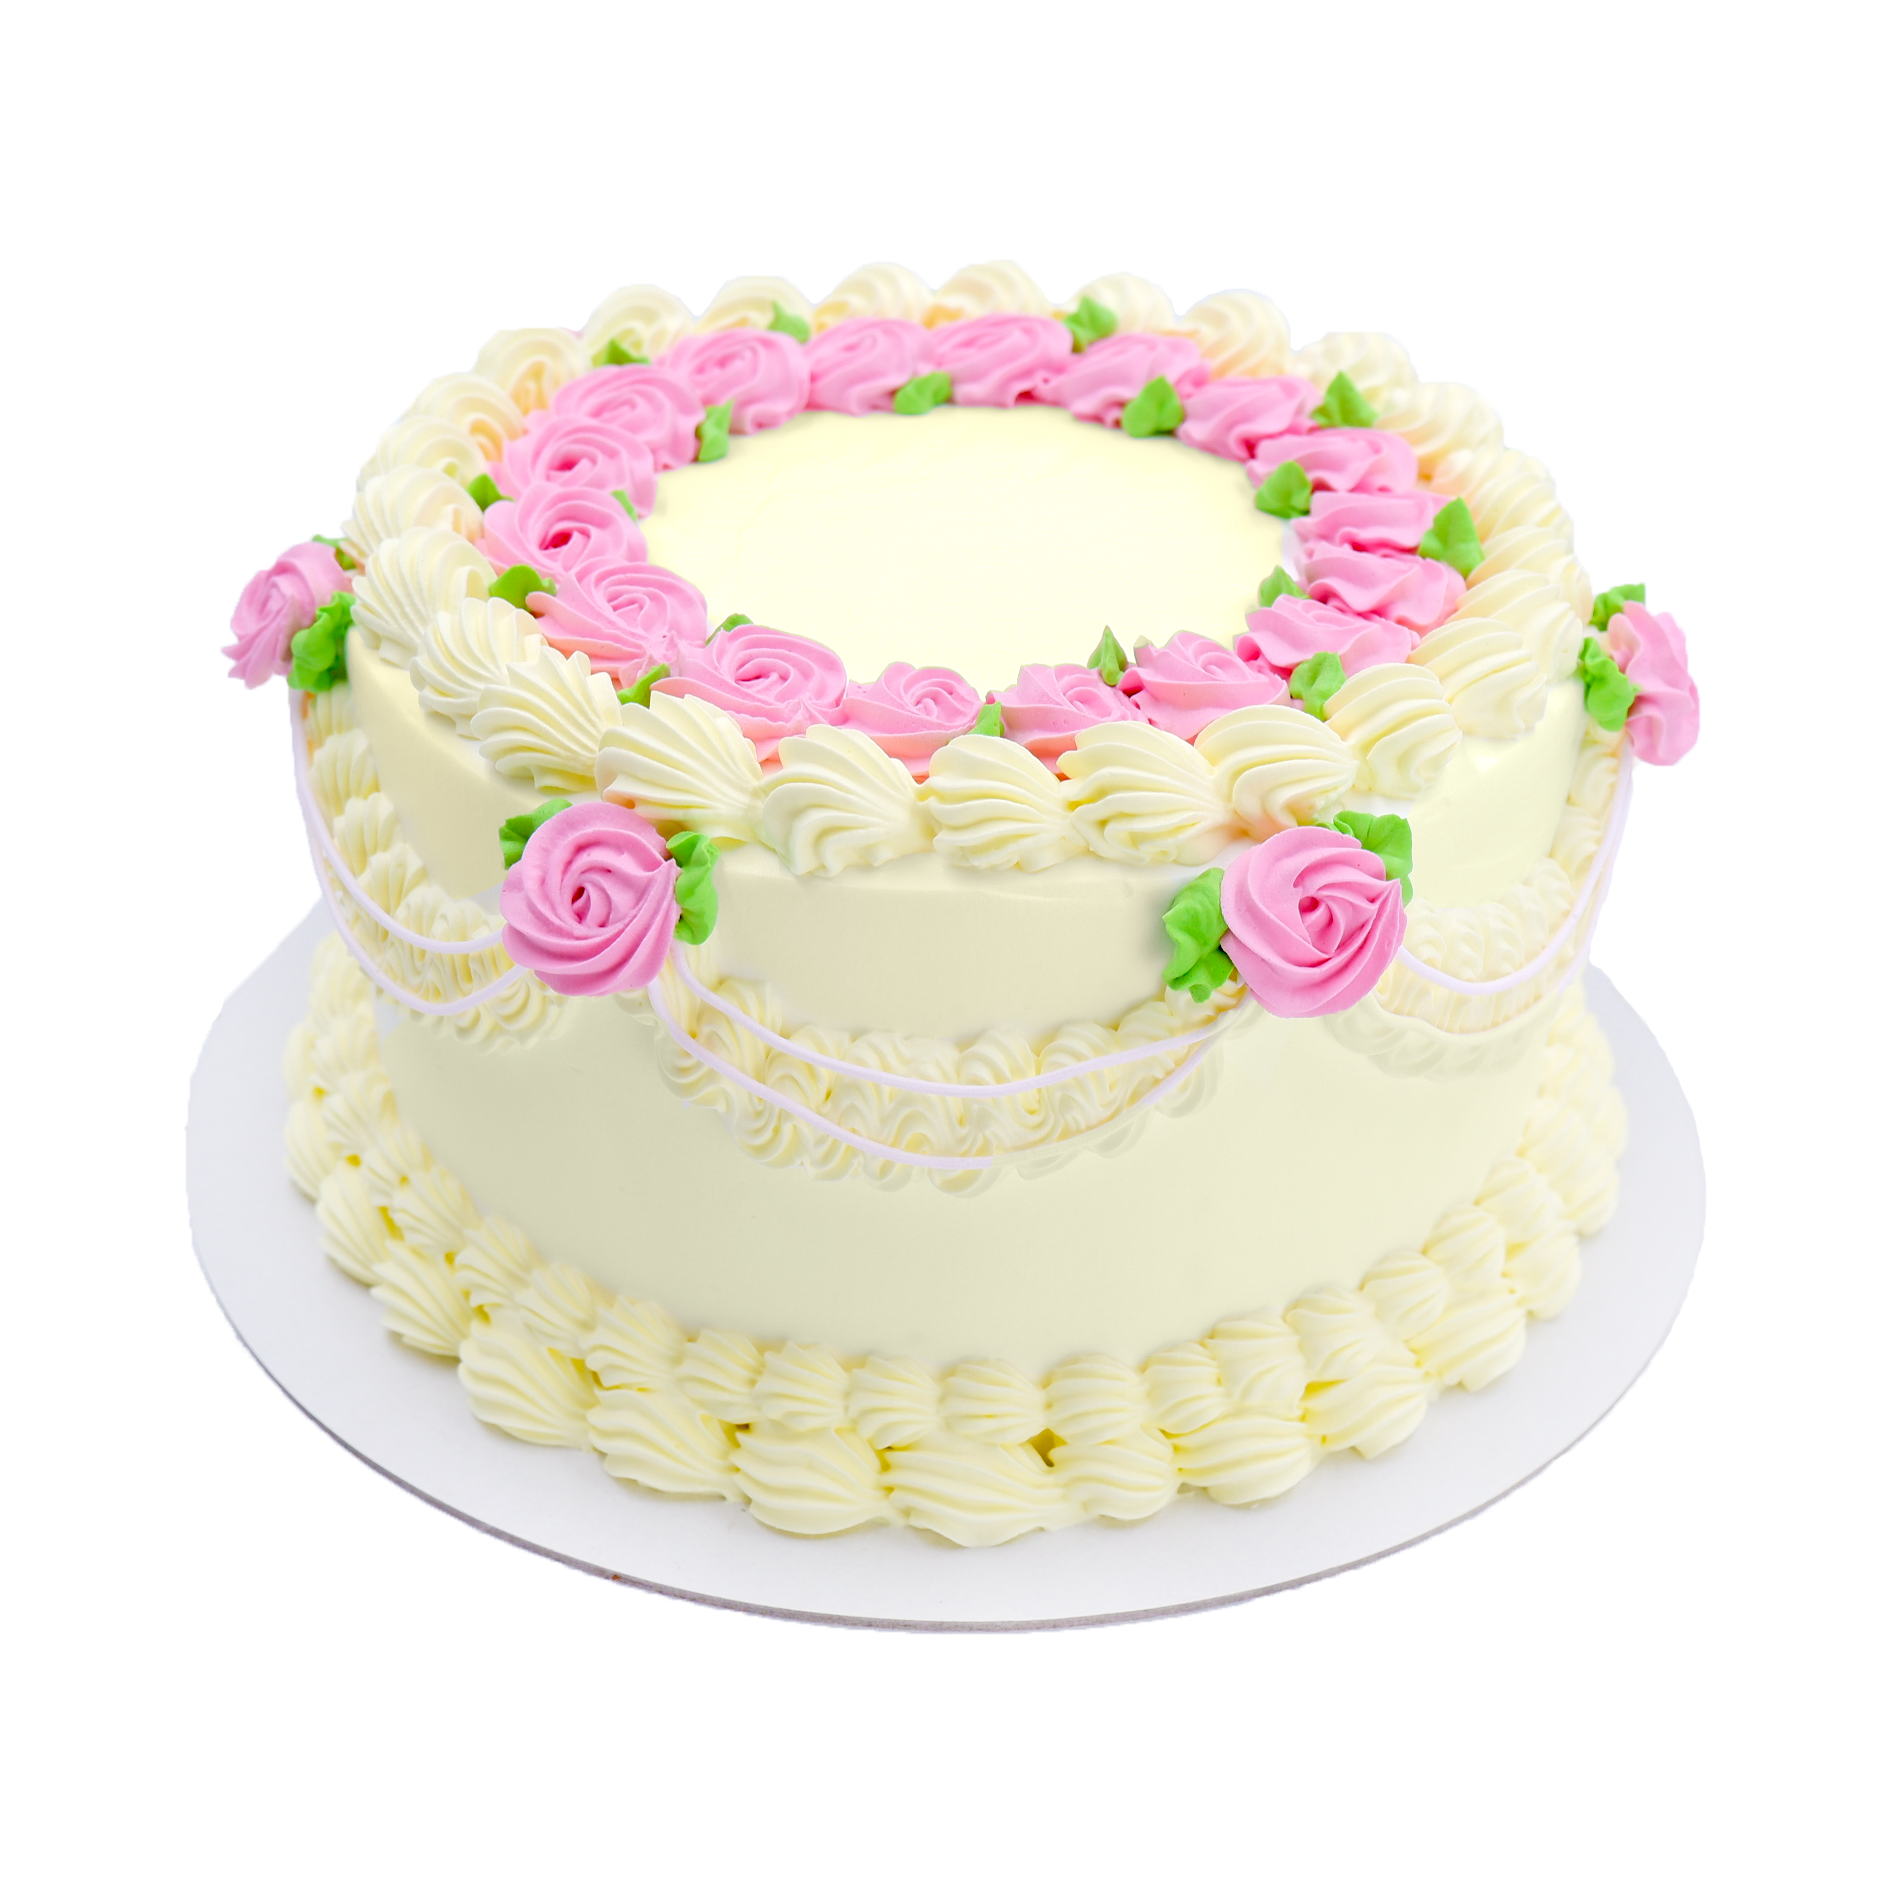 Red Rose Red Velvet Birthday Cake - CakeCentral.com